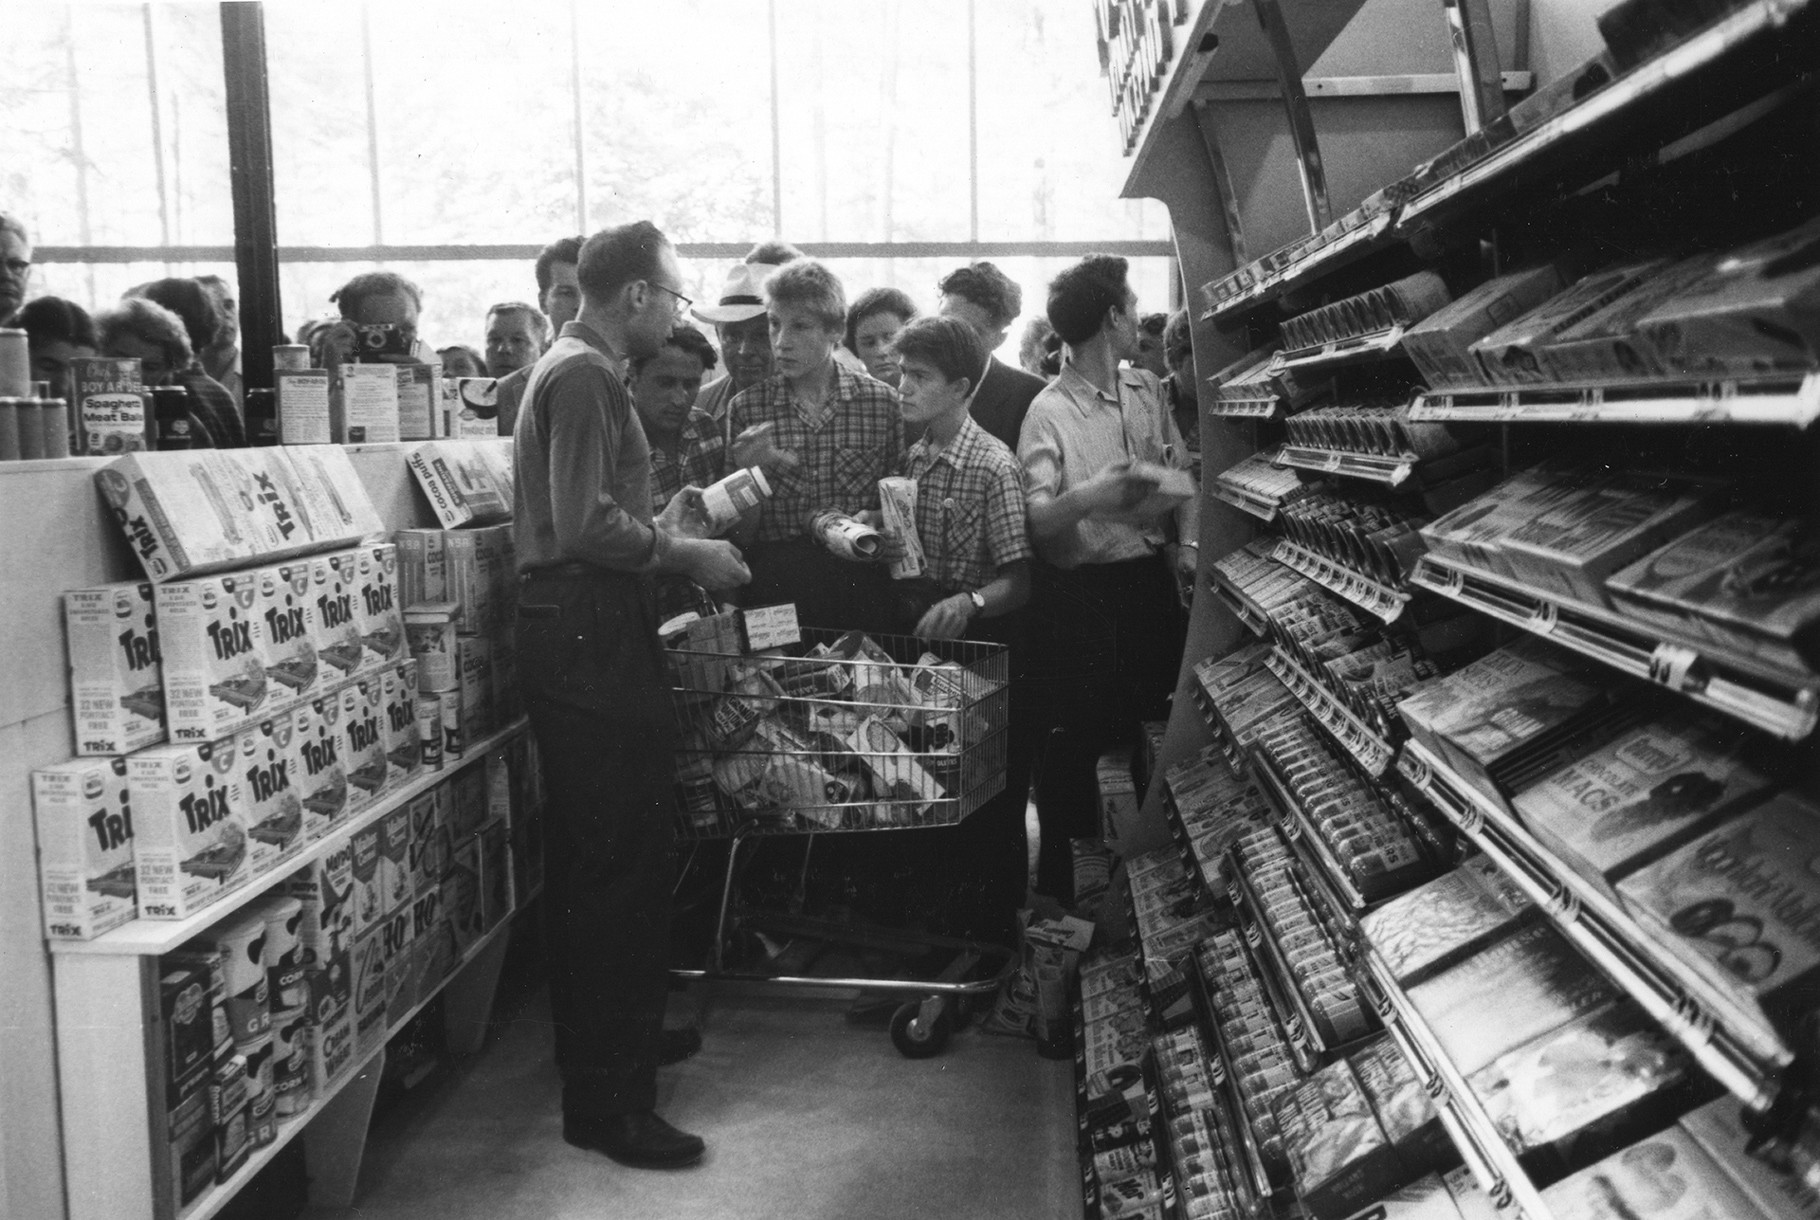 Sovjetskim posjetiteljima izložbe je prikazano kako izgleda supermarket.